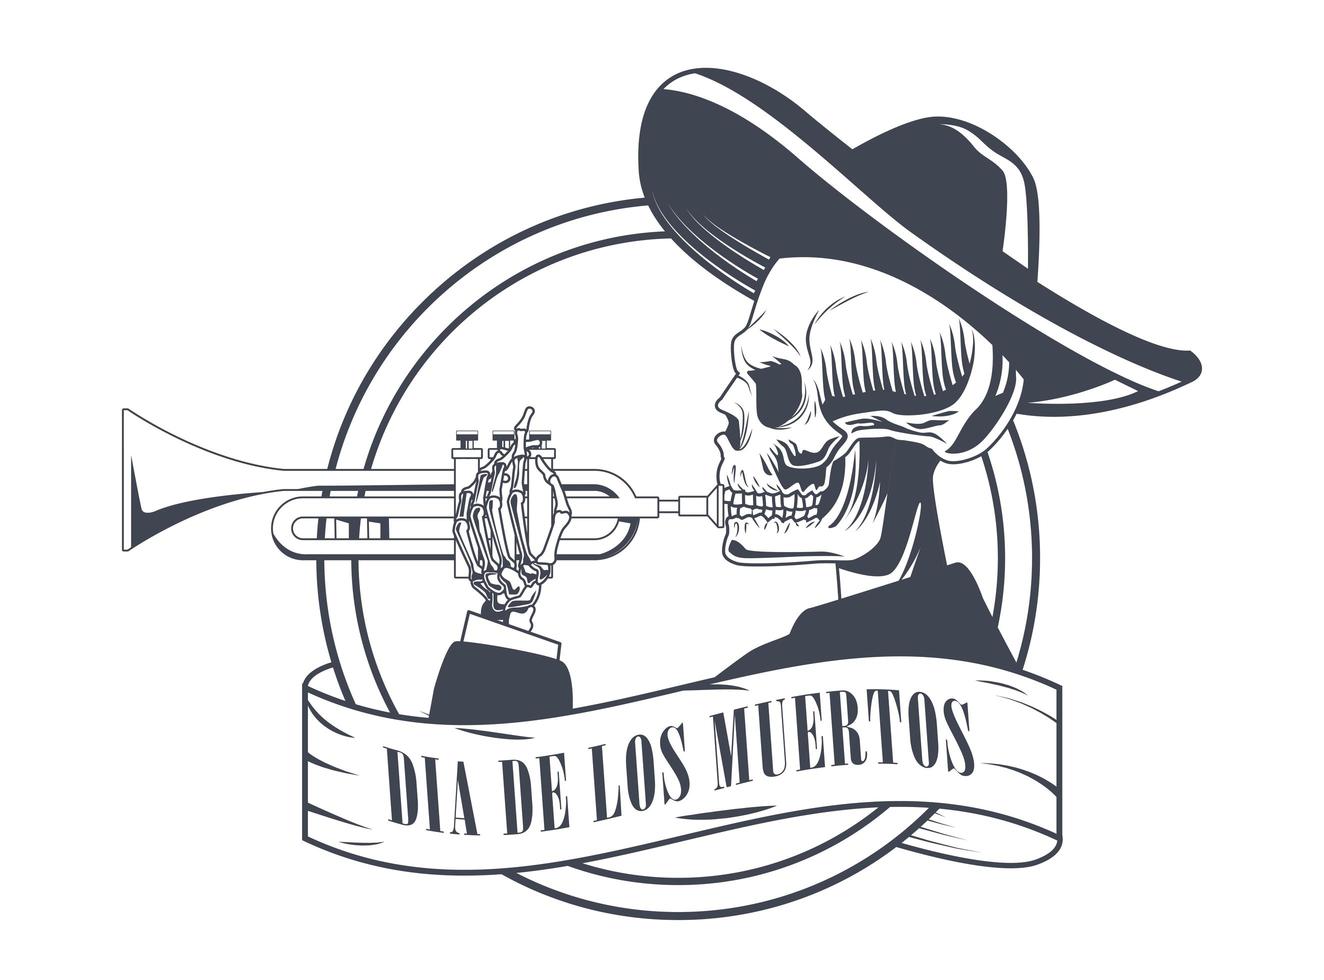 cartel de dia de los muertos con dibujo de calavera de mariachi tocando trompeta vector